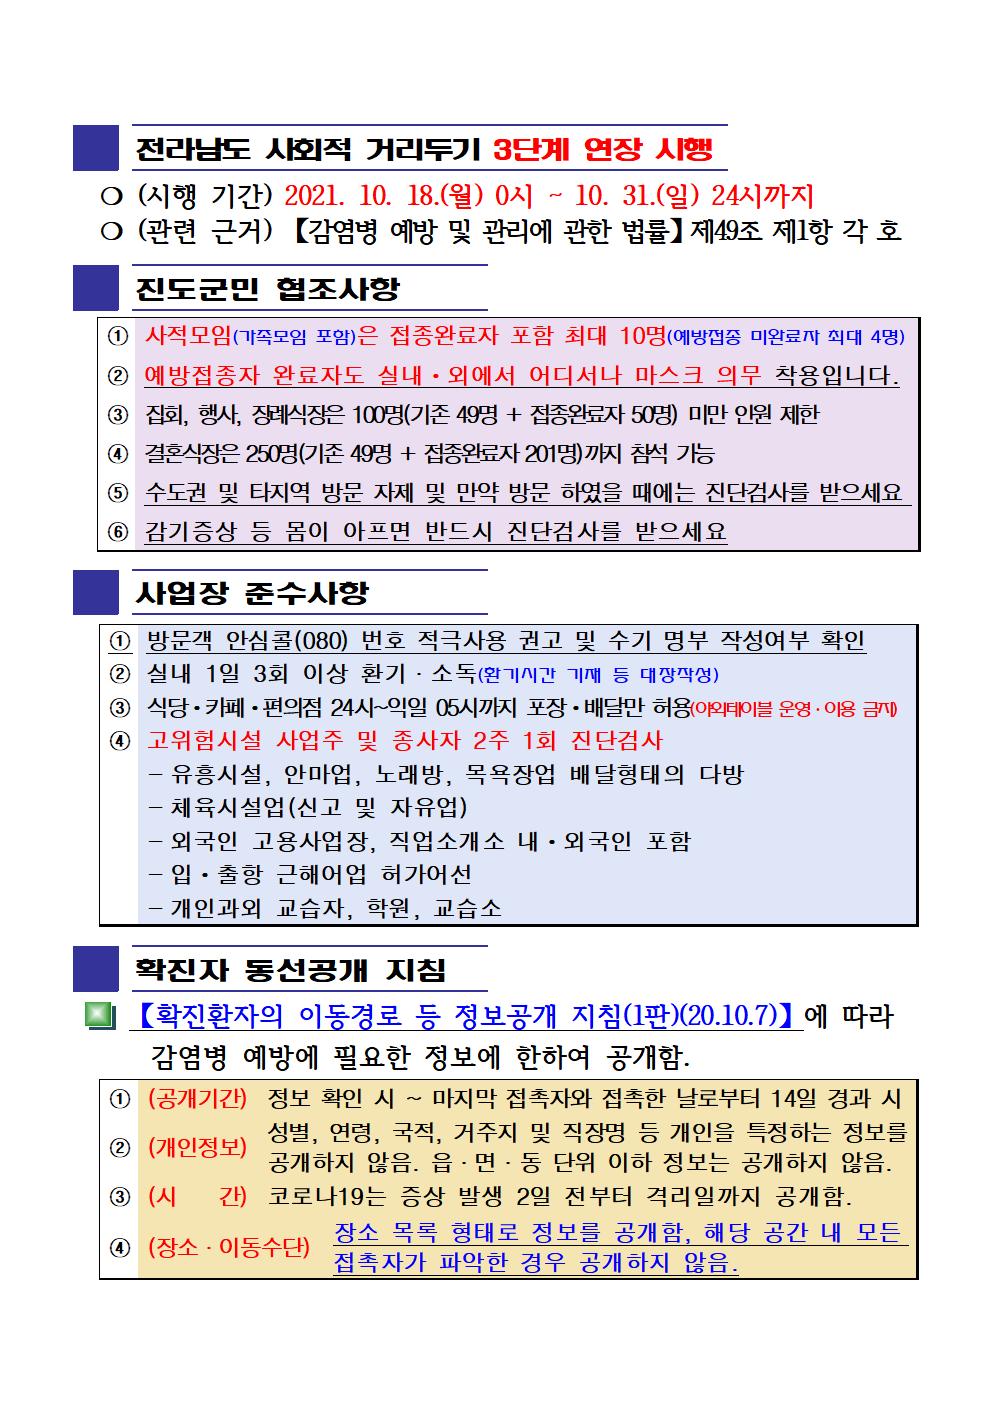 2021년 코로나19 대응 일일상황보고(10월 30일 24시 기준) 첨부#2